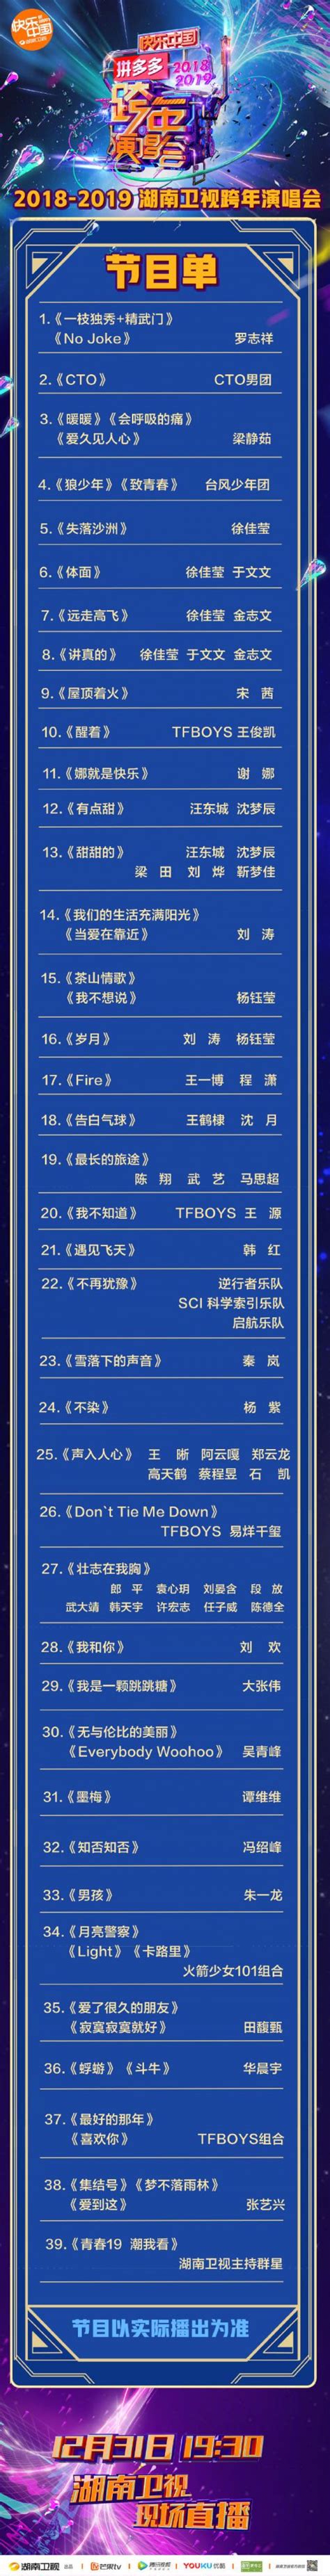 2019湖南卫视苏宁双十一晚会：狮晚嗨爆夜节目单-硅谷网